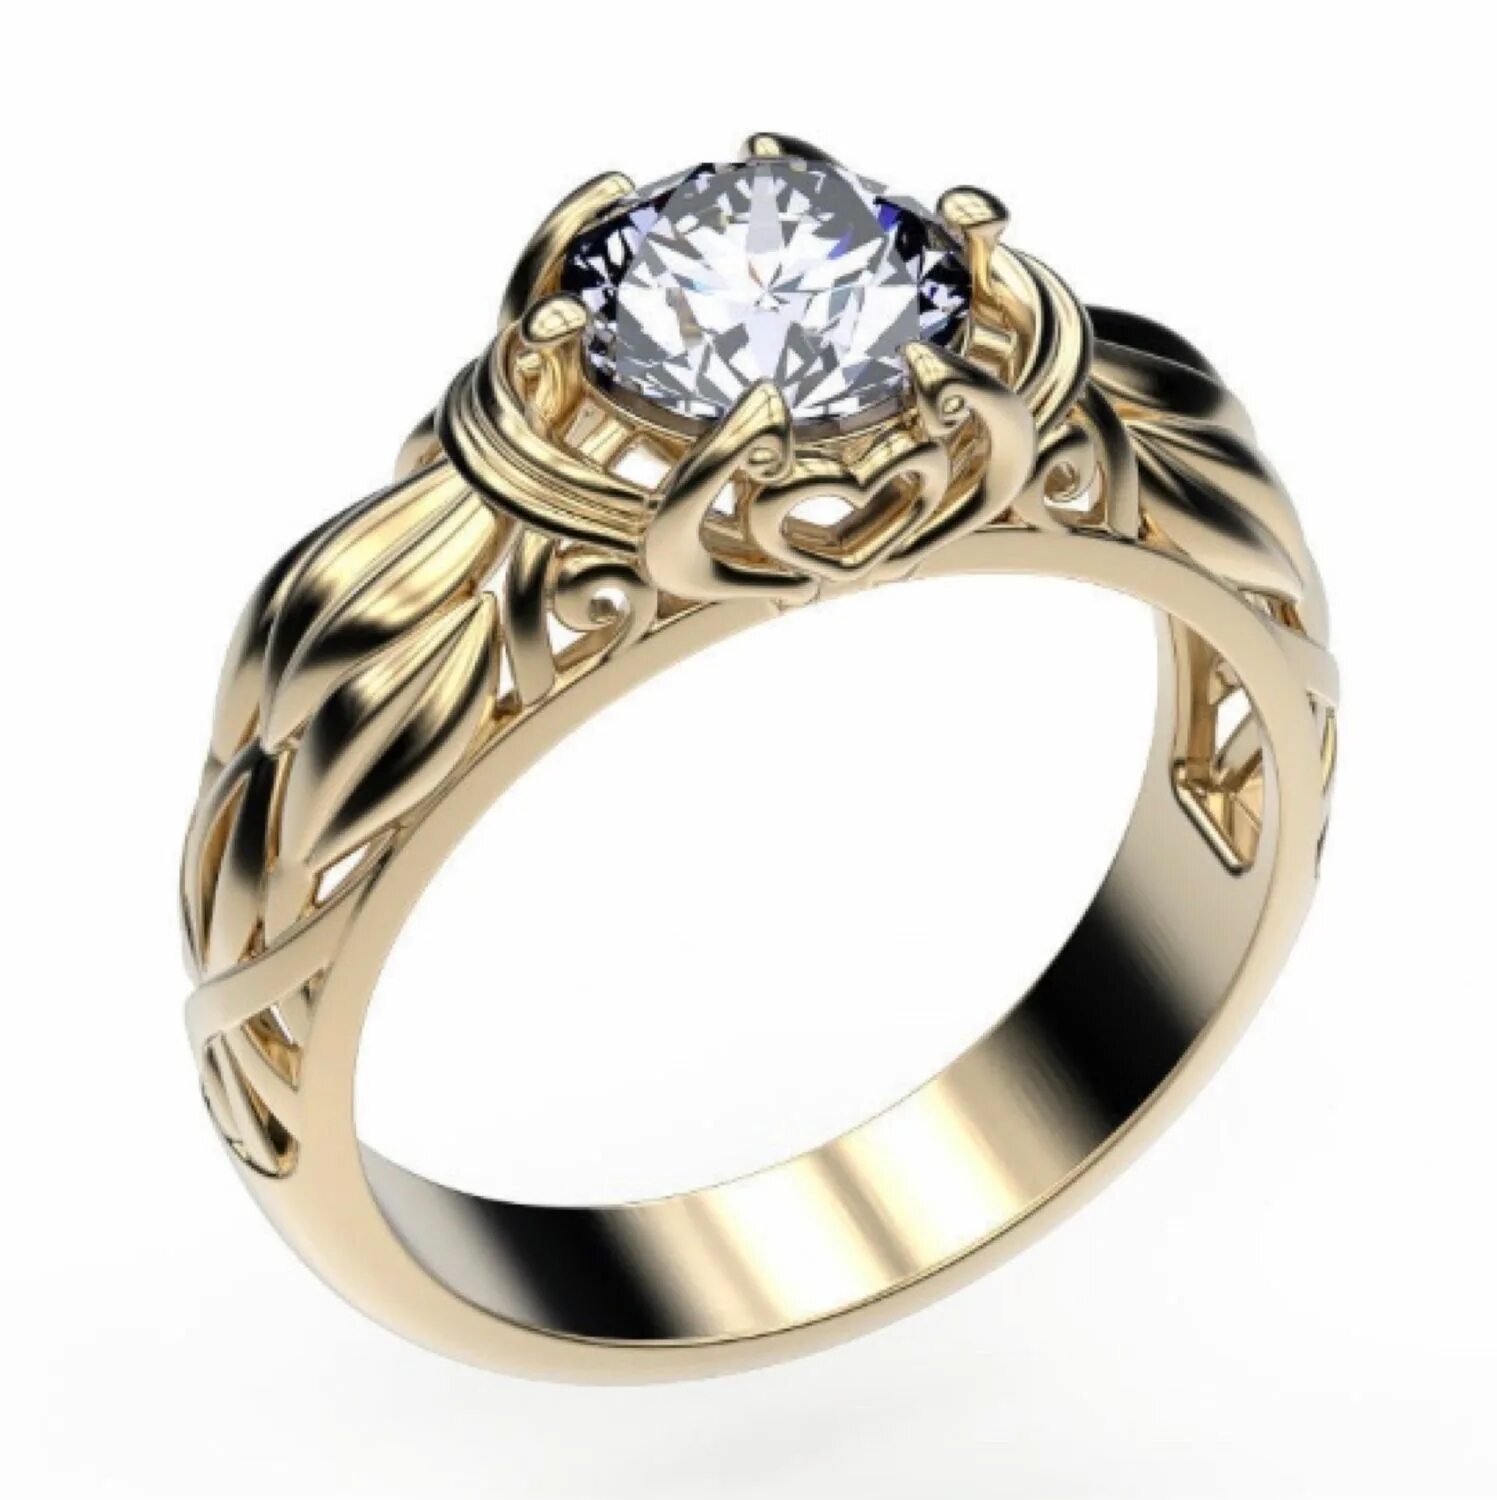 Купить кольцо спб. Кольцо Matino Gold 18.4 мм. Кольцо Matino Gold 15.9 мм. Кольцо золото 0211310000316. Кольца женские.